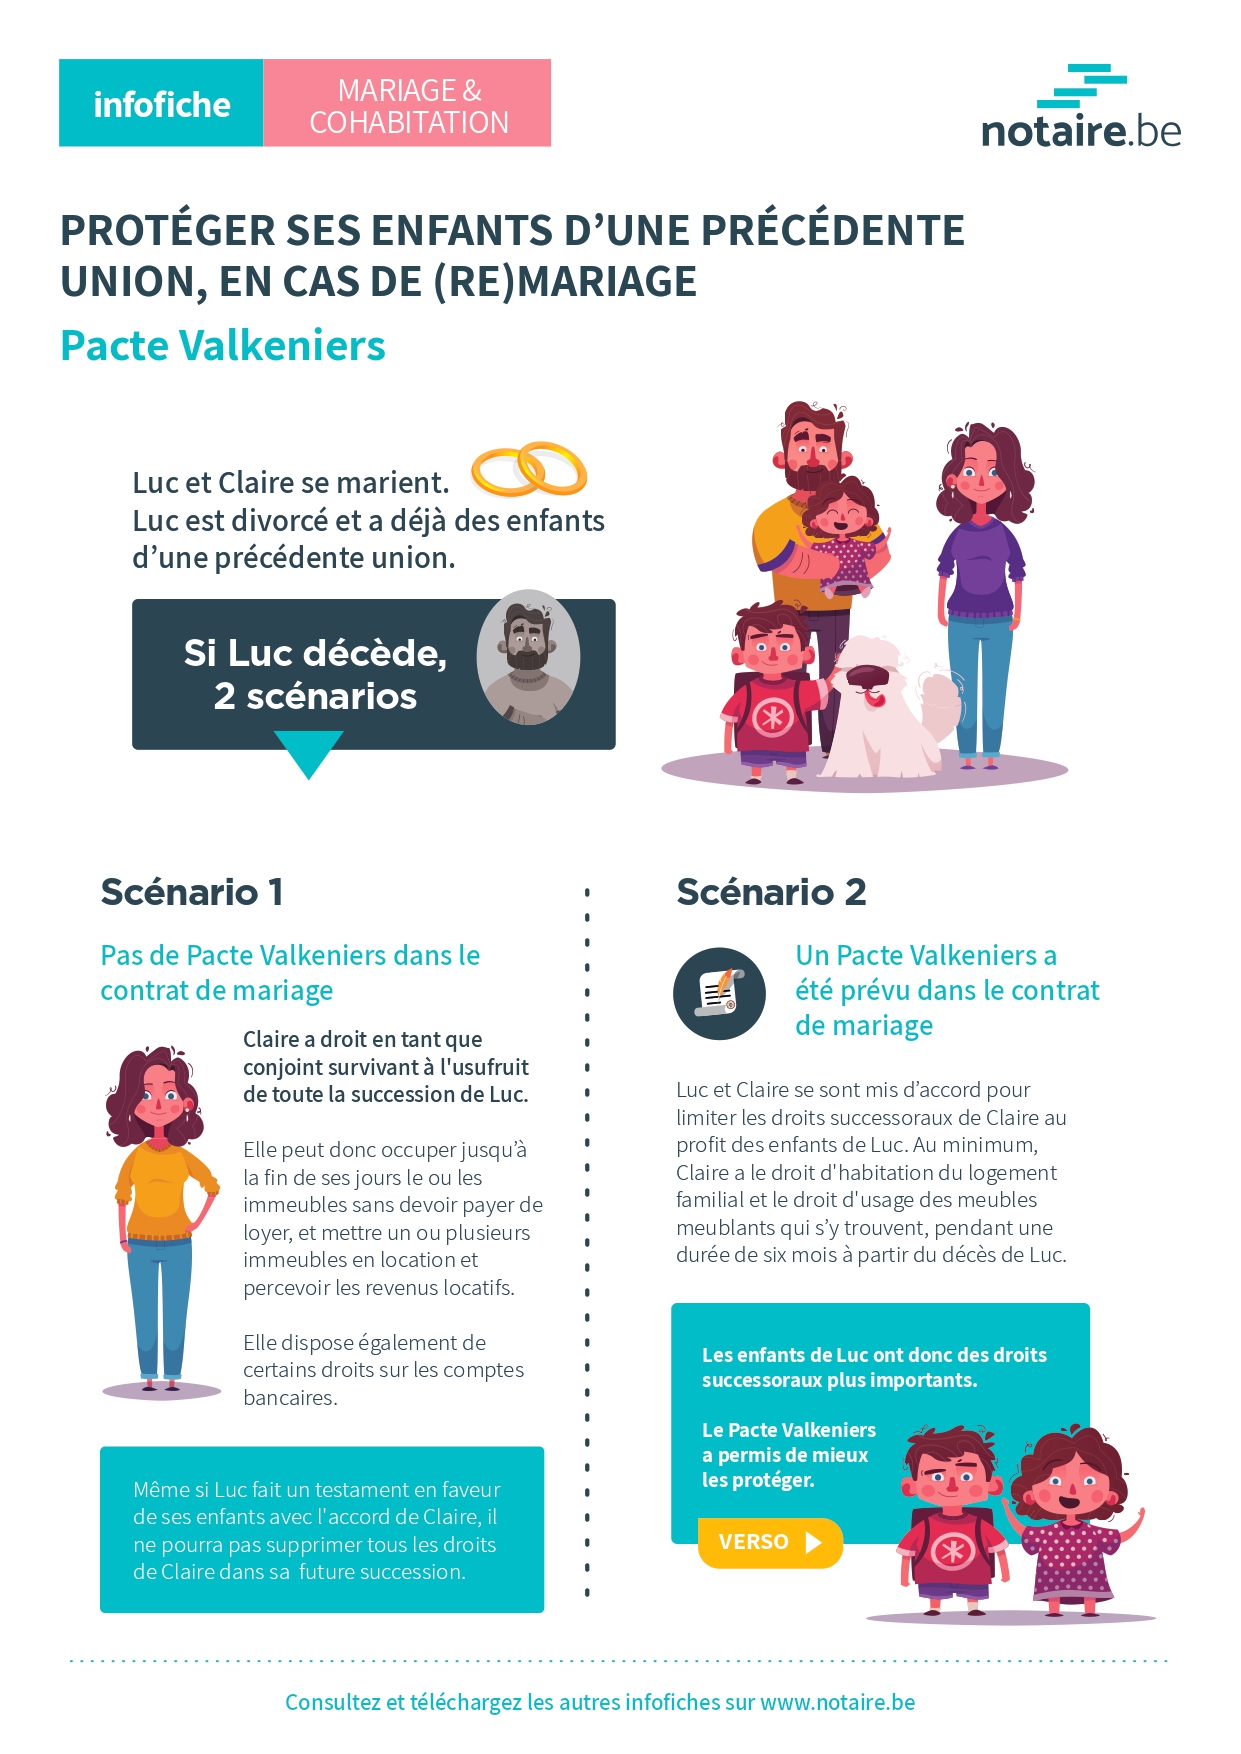 Fiche informative (legal design) sur le pacte valkeniers : comment protéger ses enfants en cas de remariage.